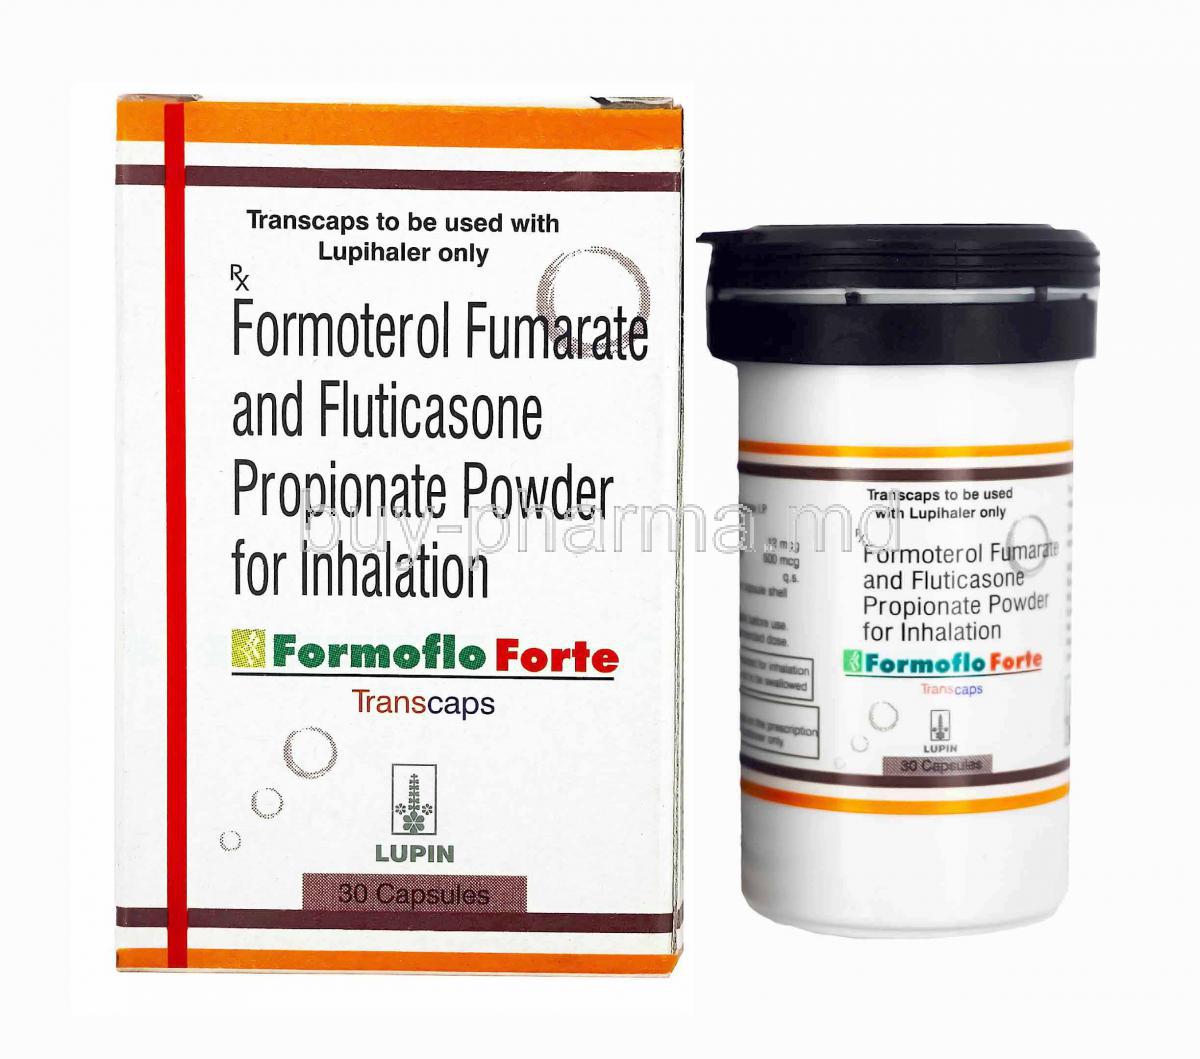 Formoflo Forte Powder for Inhalation, Formoterol and Fluticasone